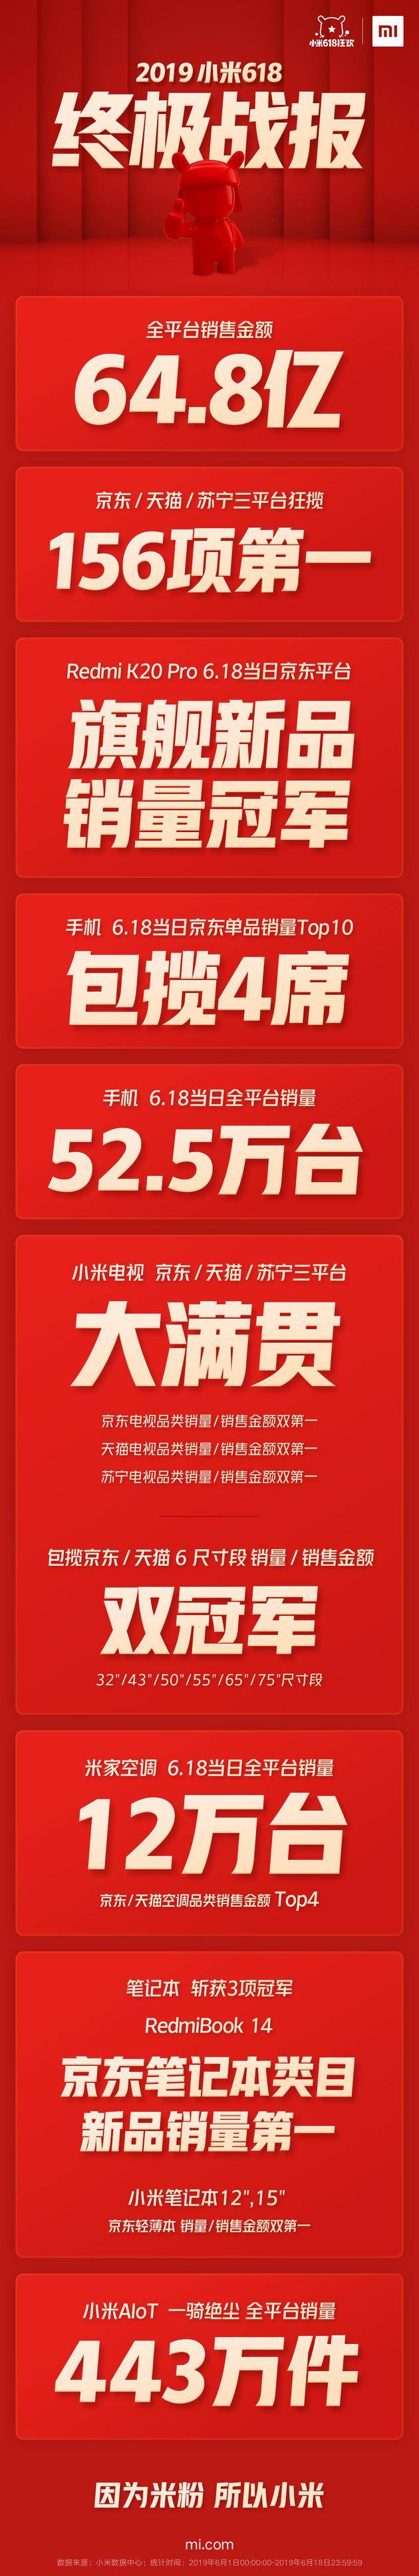 小米618战报:全平台销售额64.8亿 AIoT产品销量443万